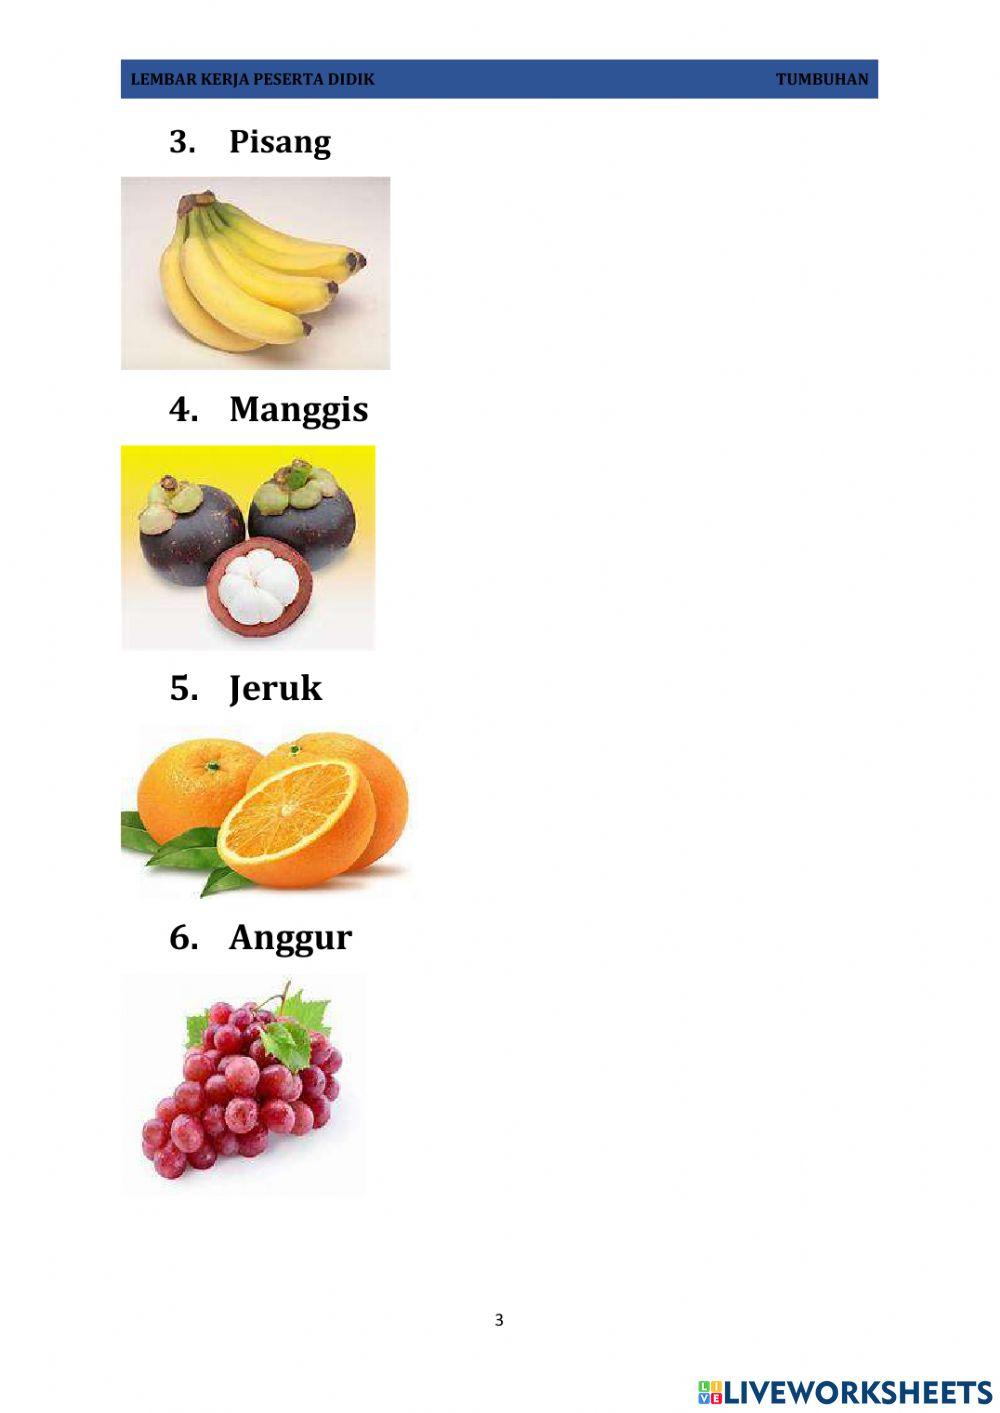 Lkpd buah-buahan